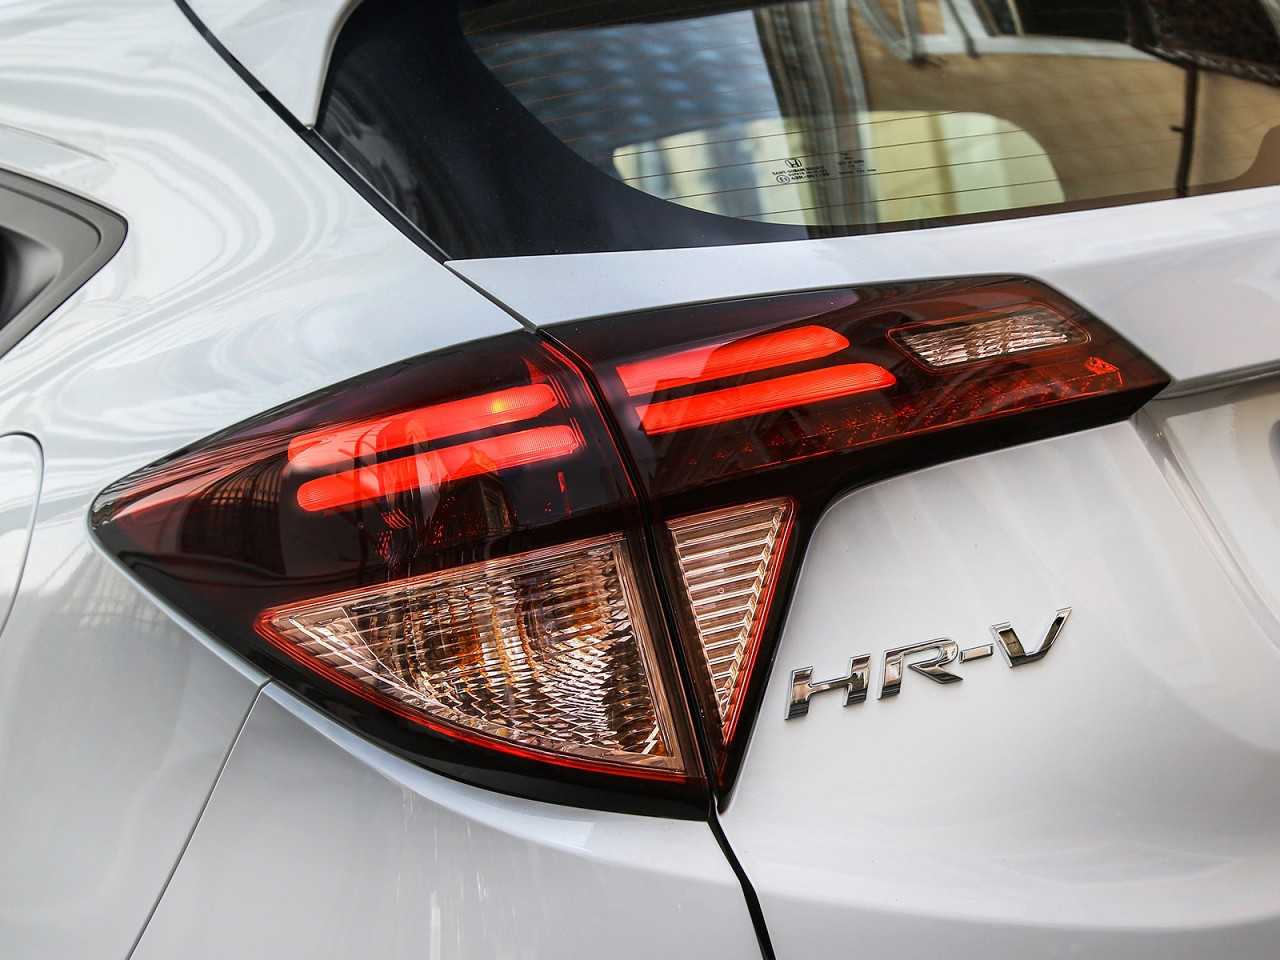 HondaHR-V 2017 - lanternas